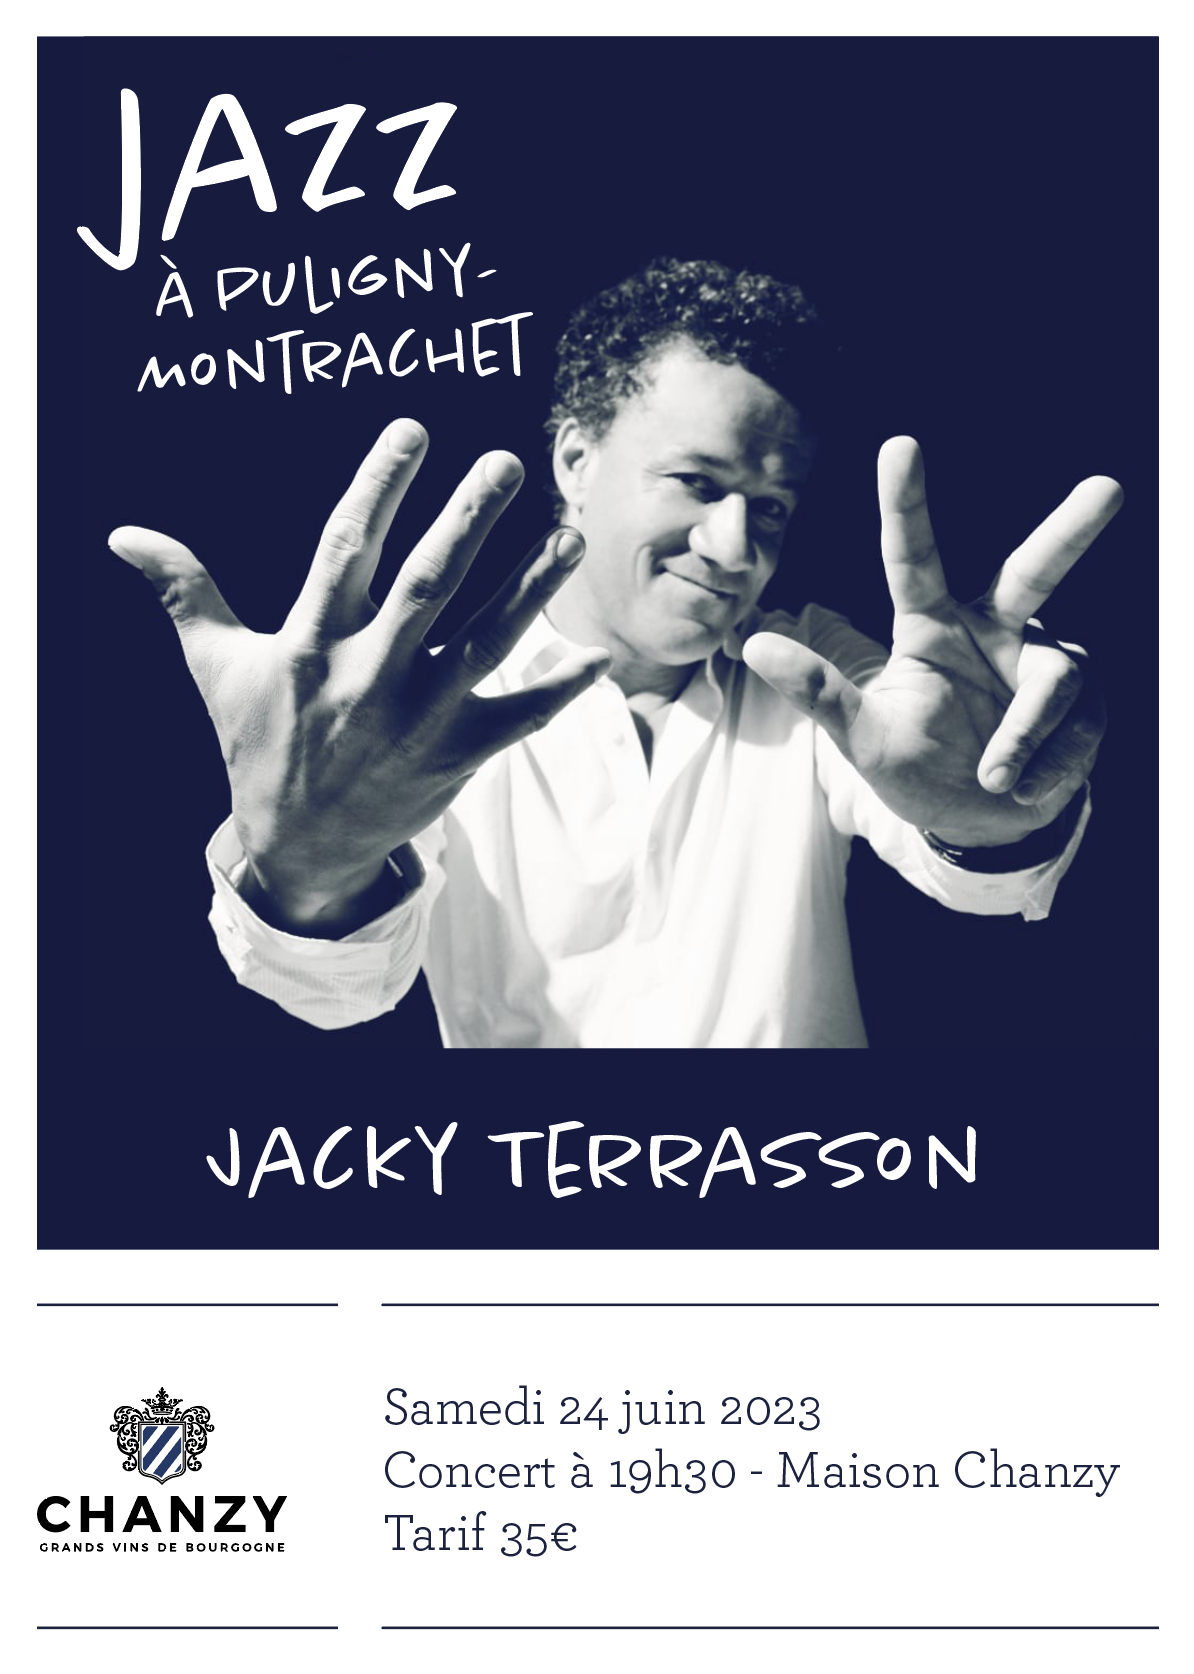 Jacky Terrasson à la Maison Chanzy - Jazz à Puligny